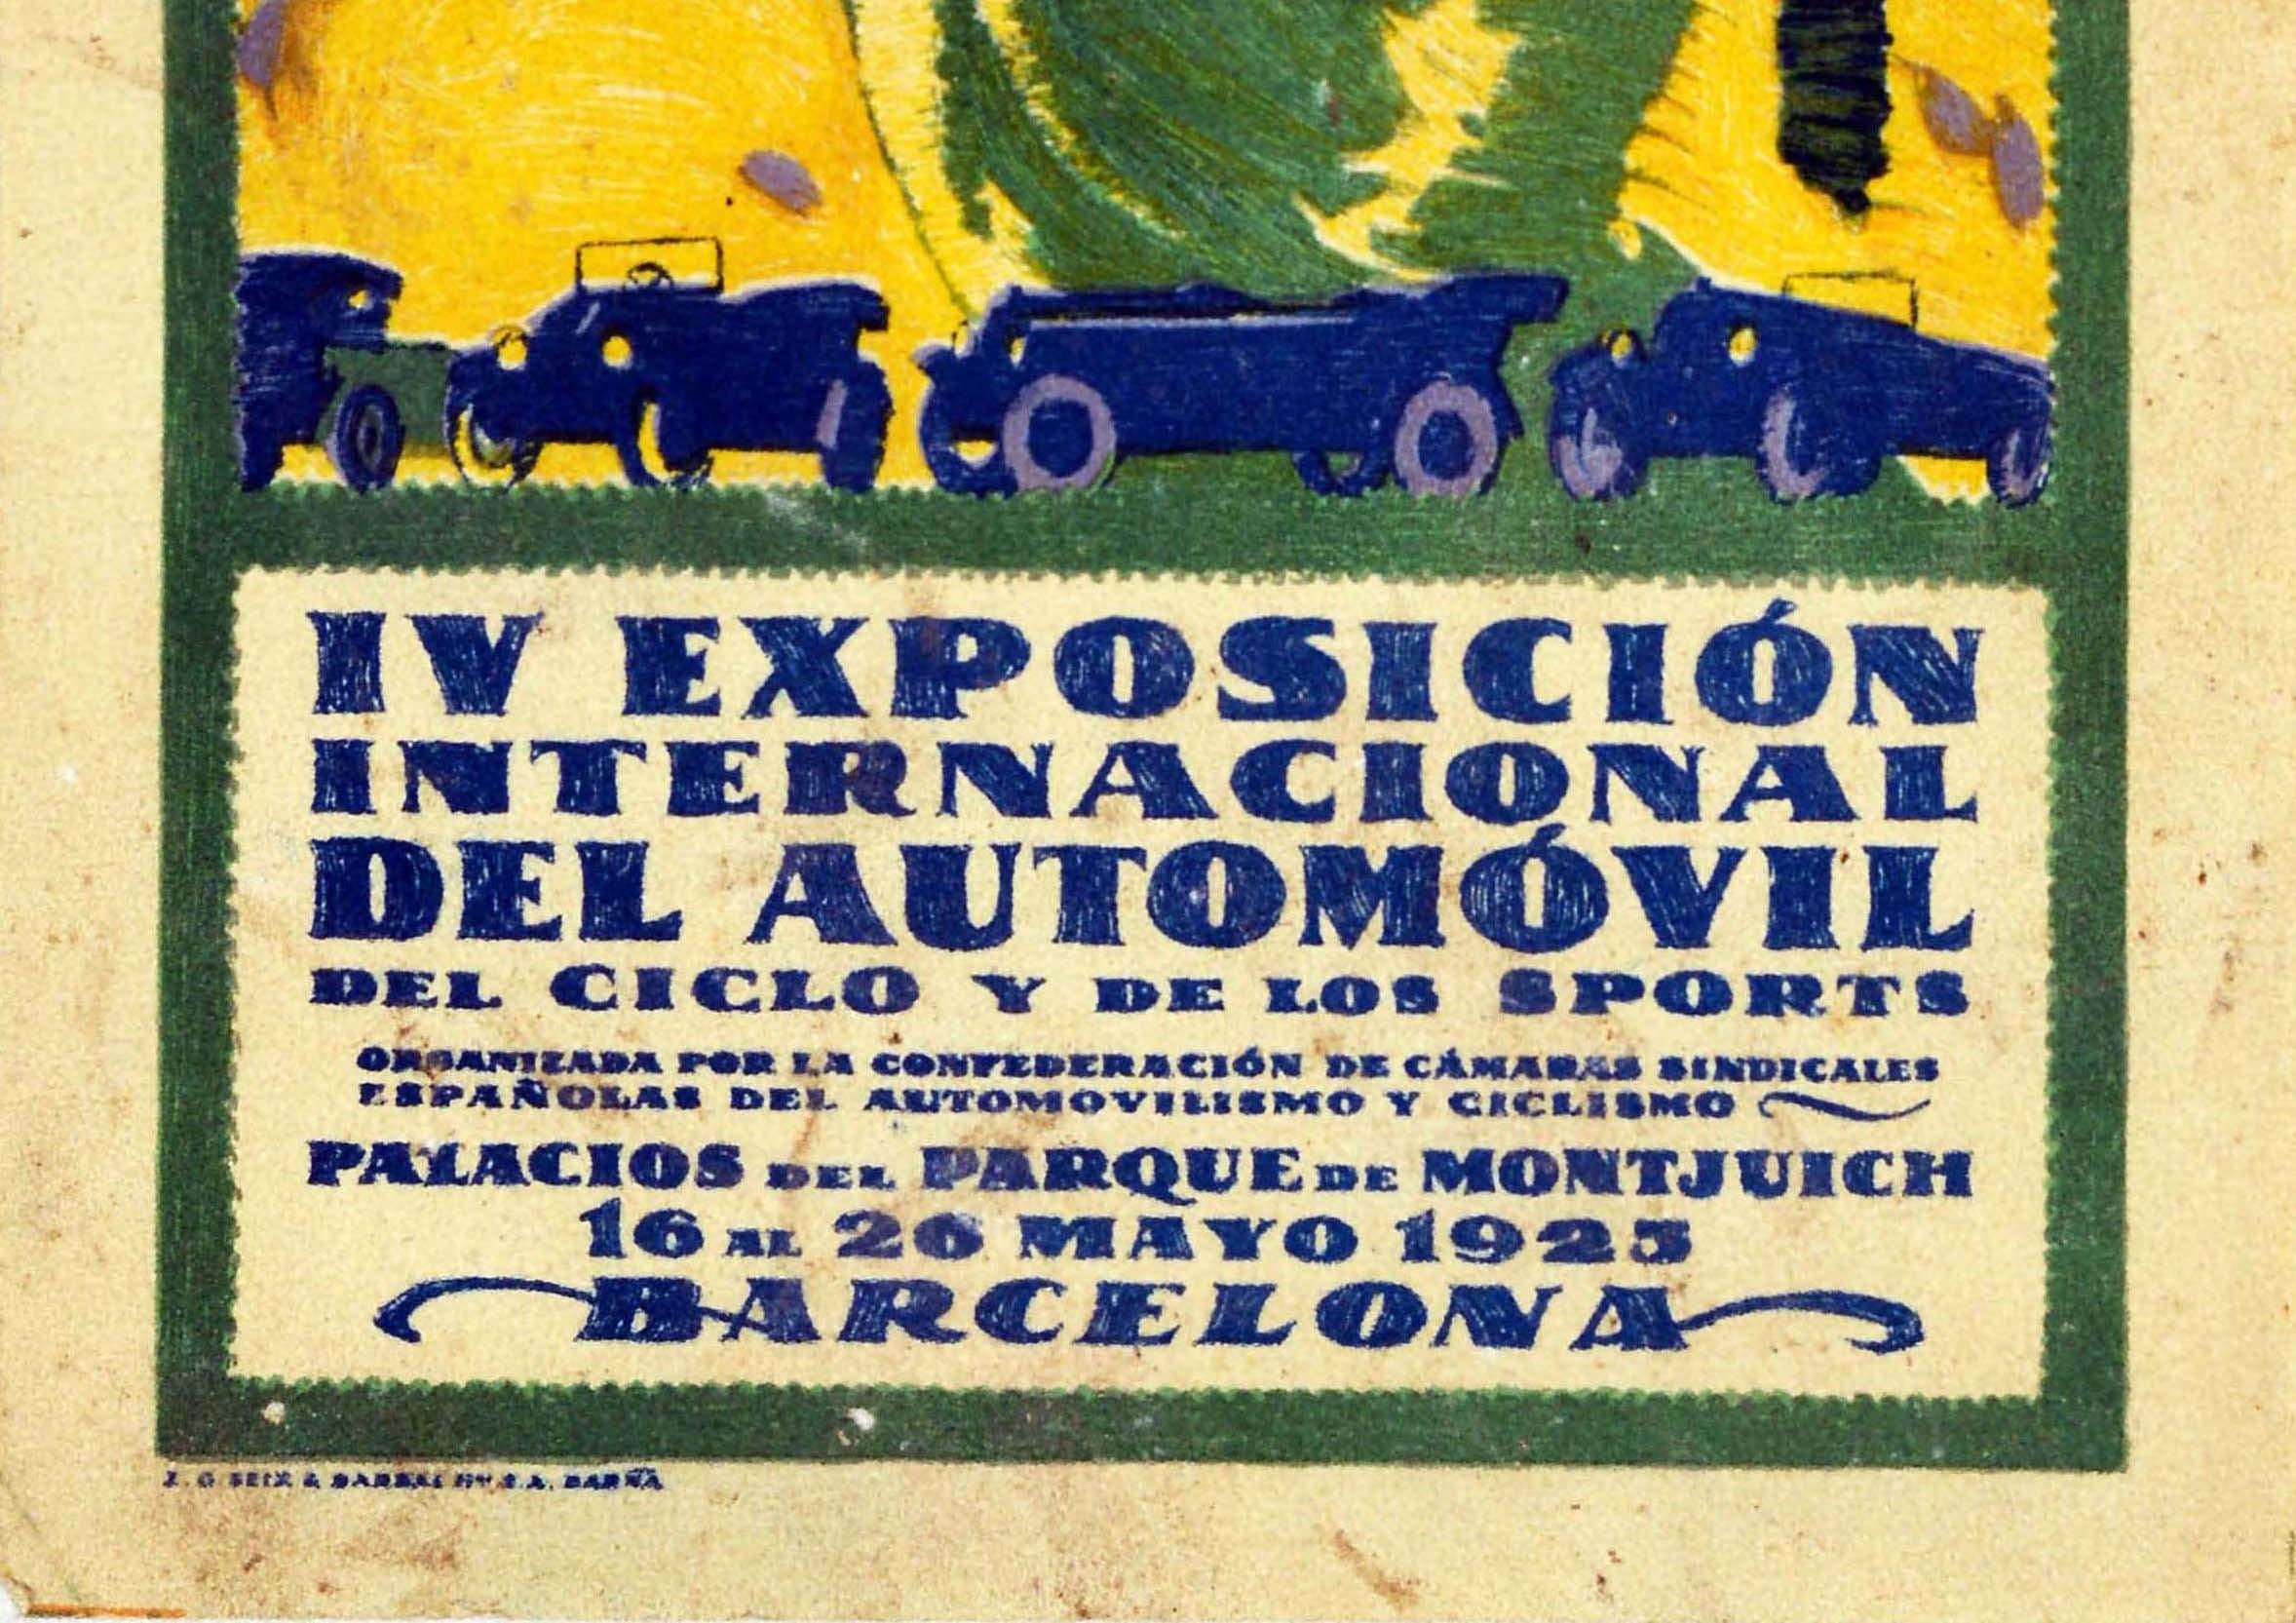 Affiche rétro originale du salon de l'automobile de Barcelone, Voitures anciennes - Art déco Print par Unknown